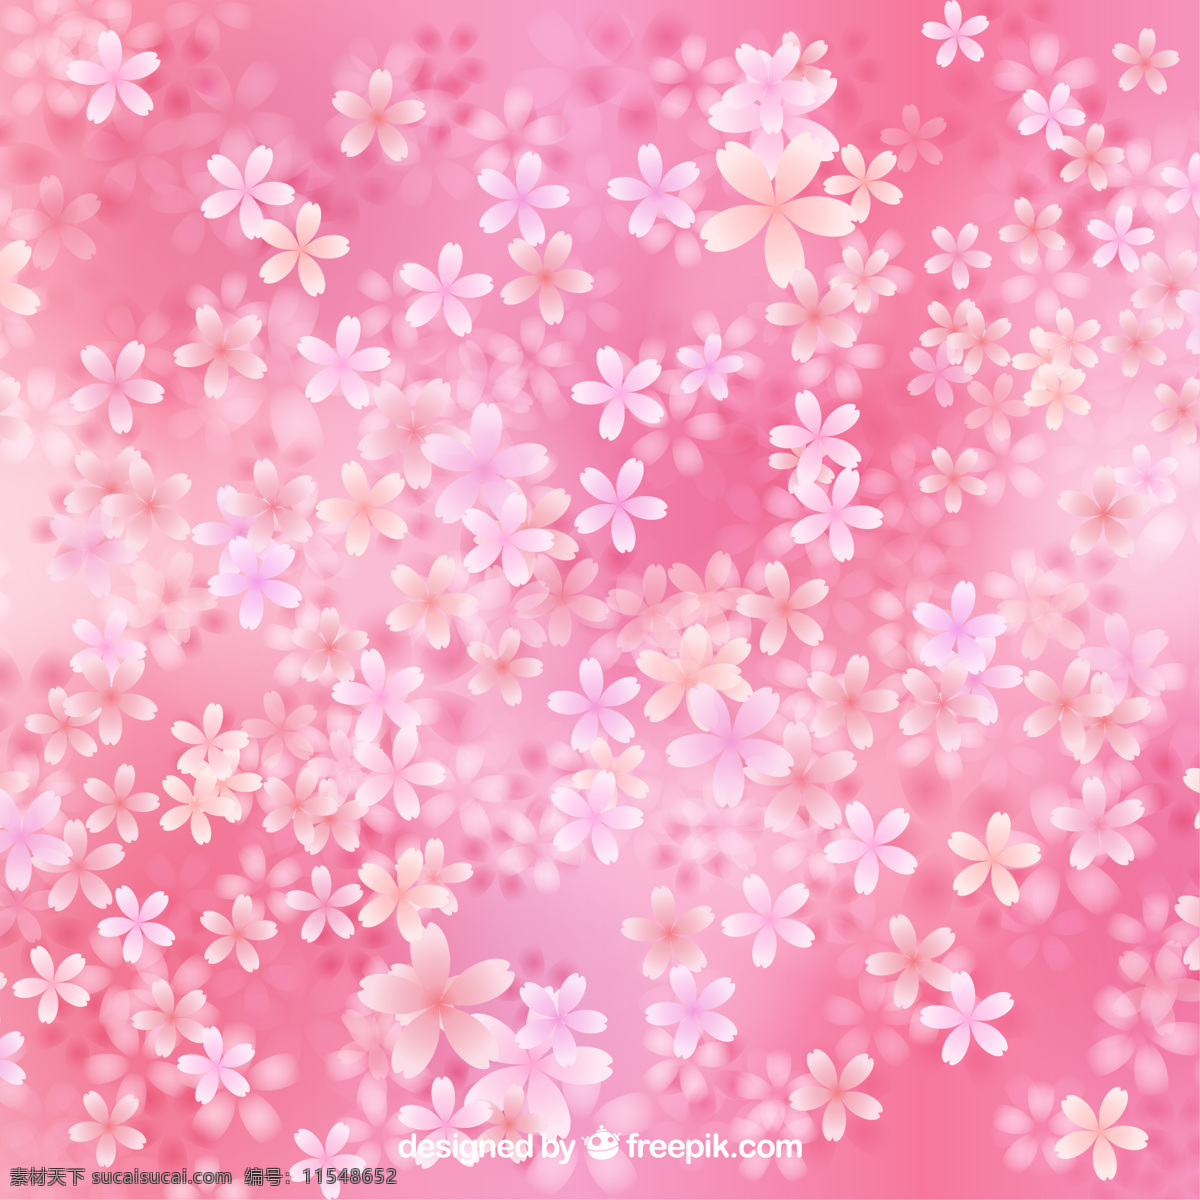 樱花 盛开 粉红色 背景 上 花 自然 春天 花背景 植物 粉红色背景 樱桃 春天背景 自然背景 美丽 季节 粉色